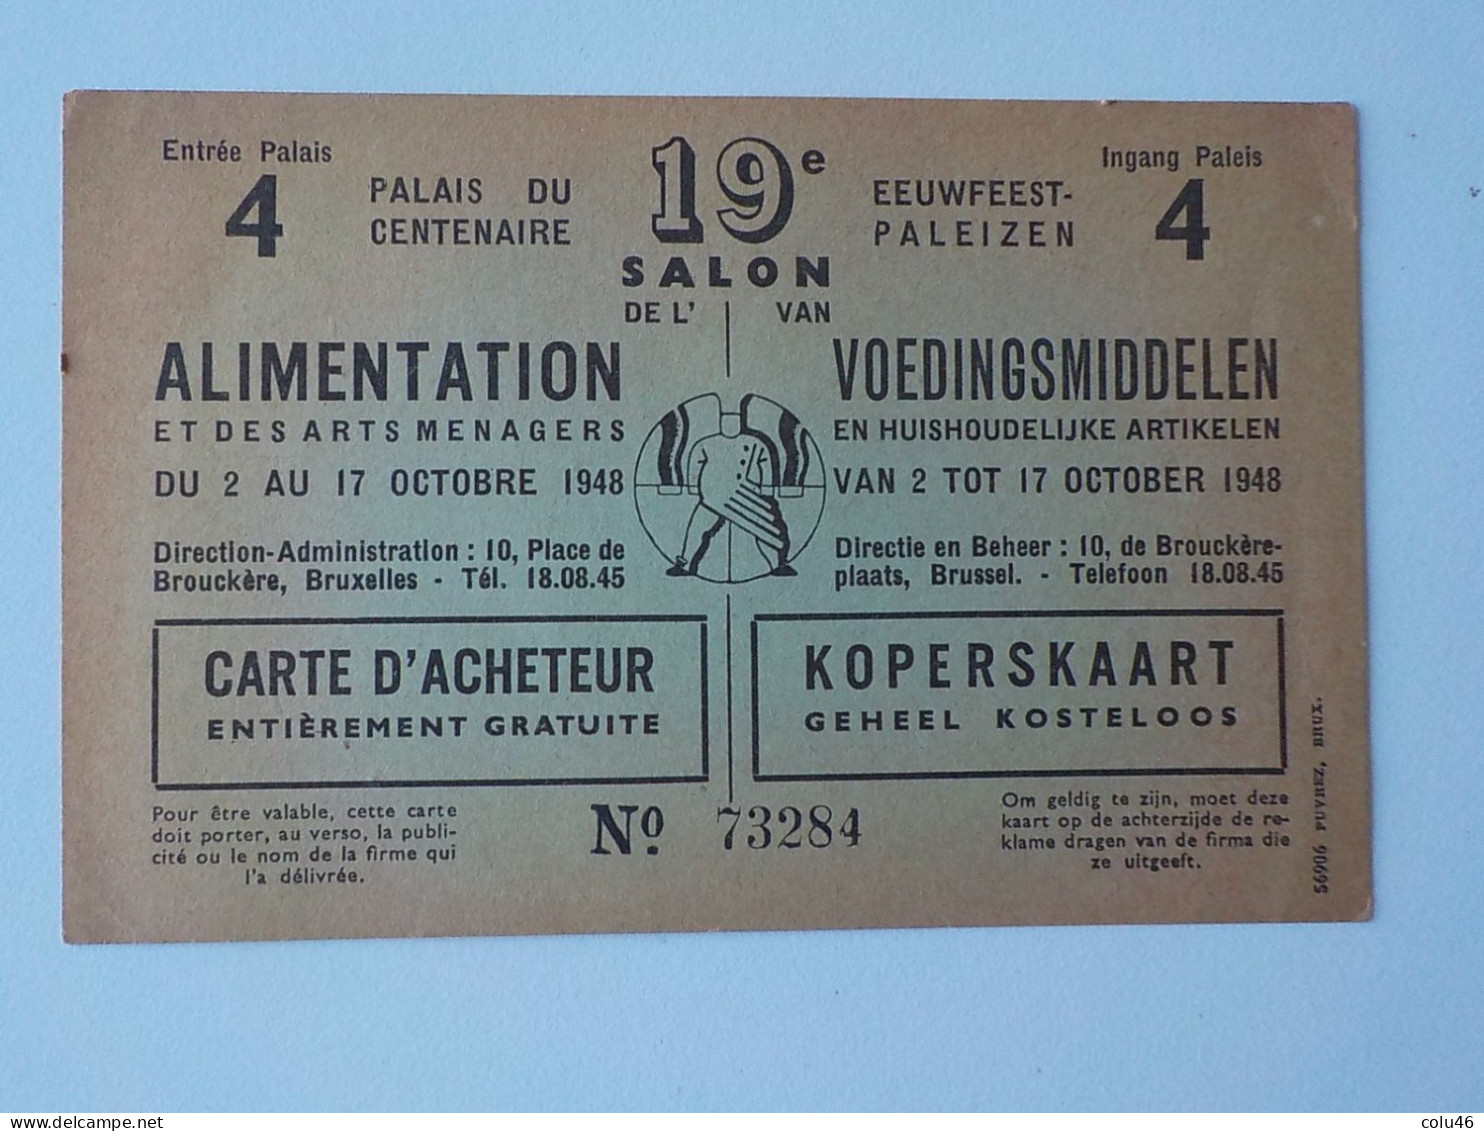 1948 Bruxelles Pub Palais Du Centenaire 19ème Salon Alimentation & Arts Ménagers Eeuwfeest Voedingsmiddelen - Festivals, Events